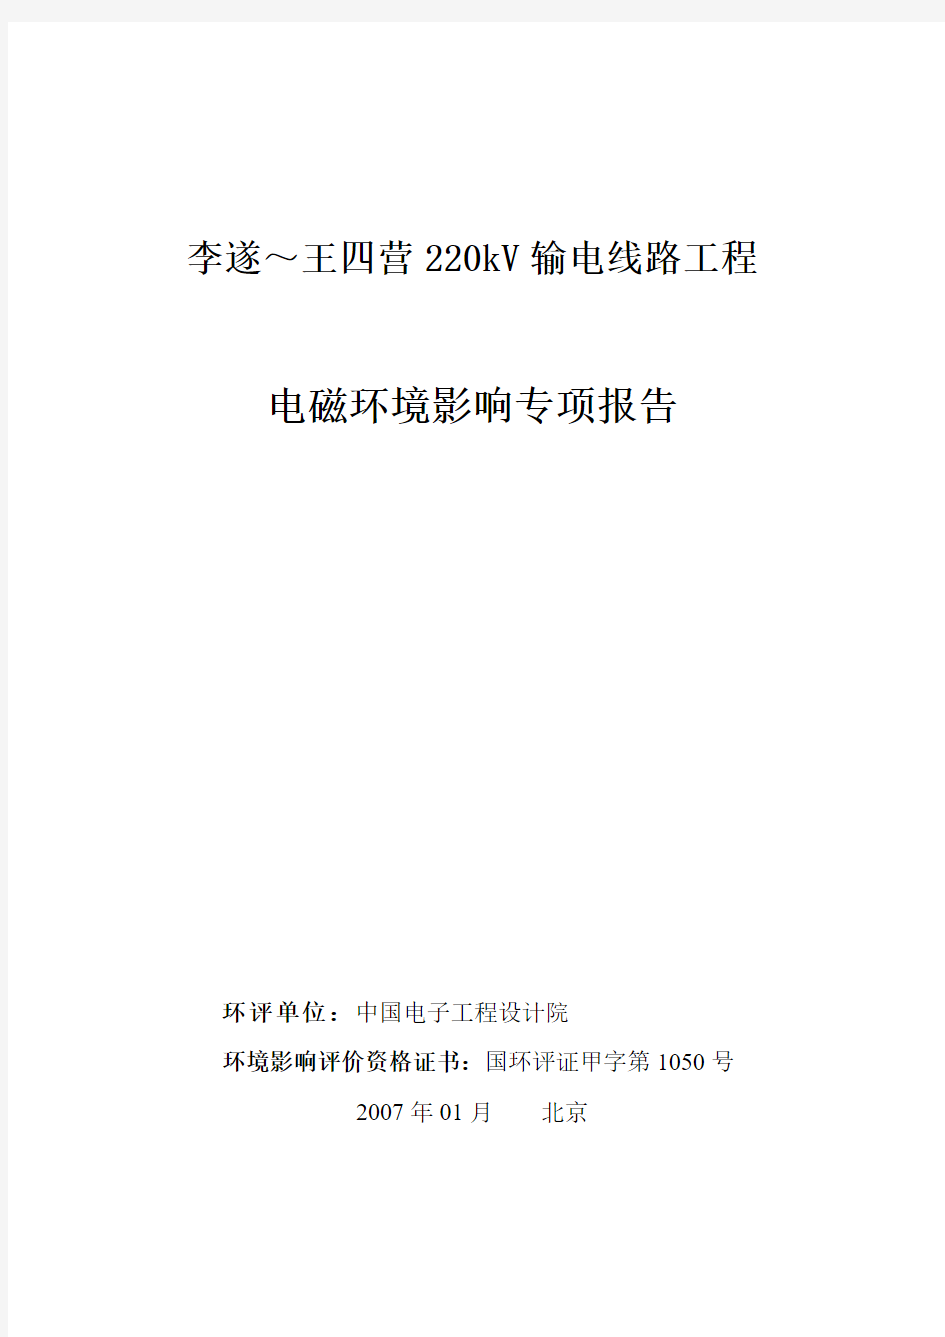 李遂～王四营220kV输电线路工程电磁环境影响专项报告